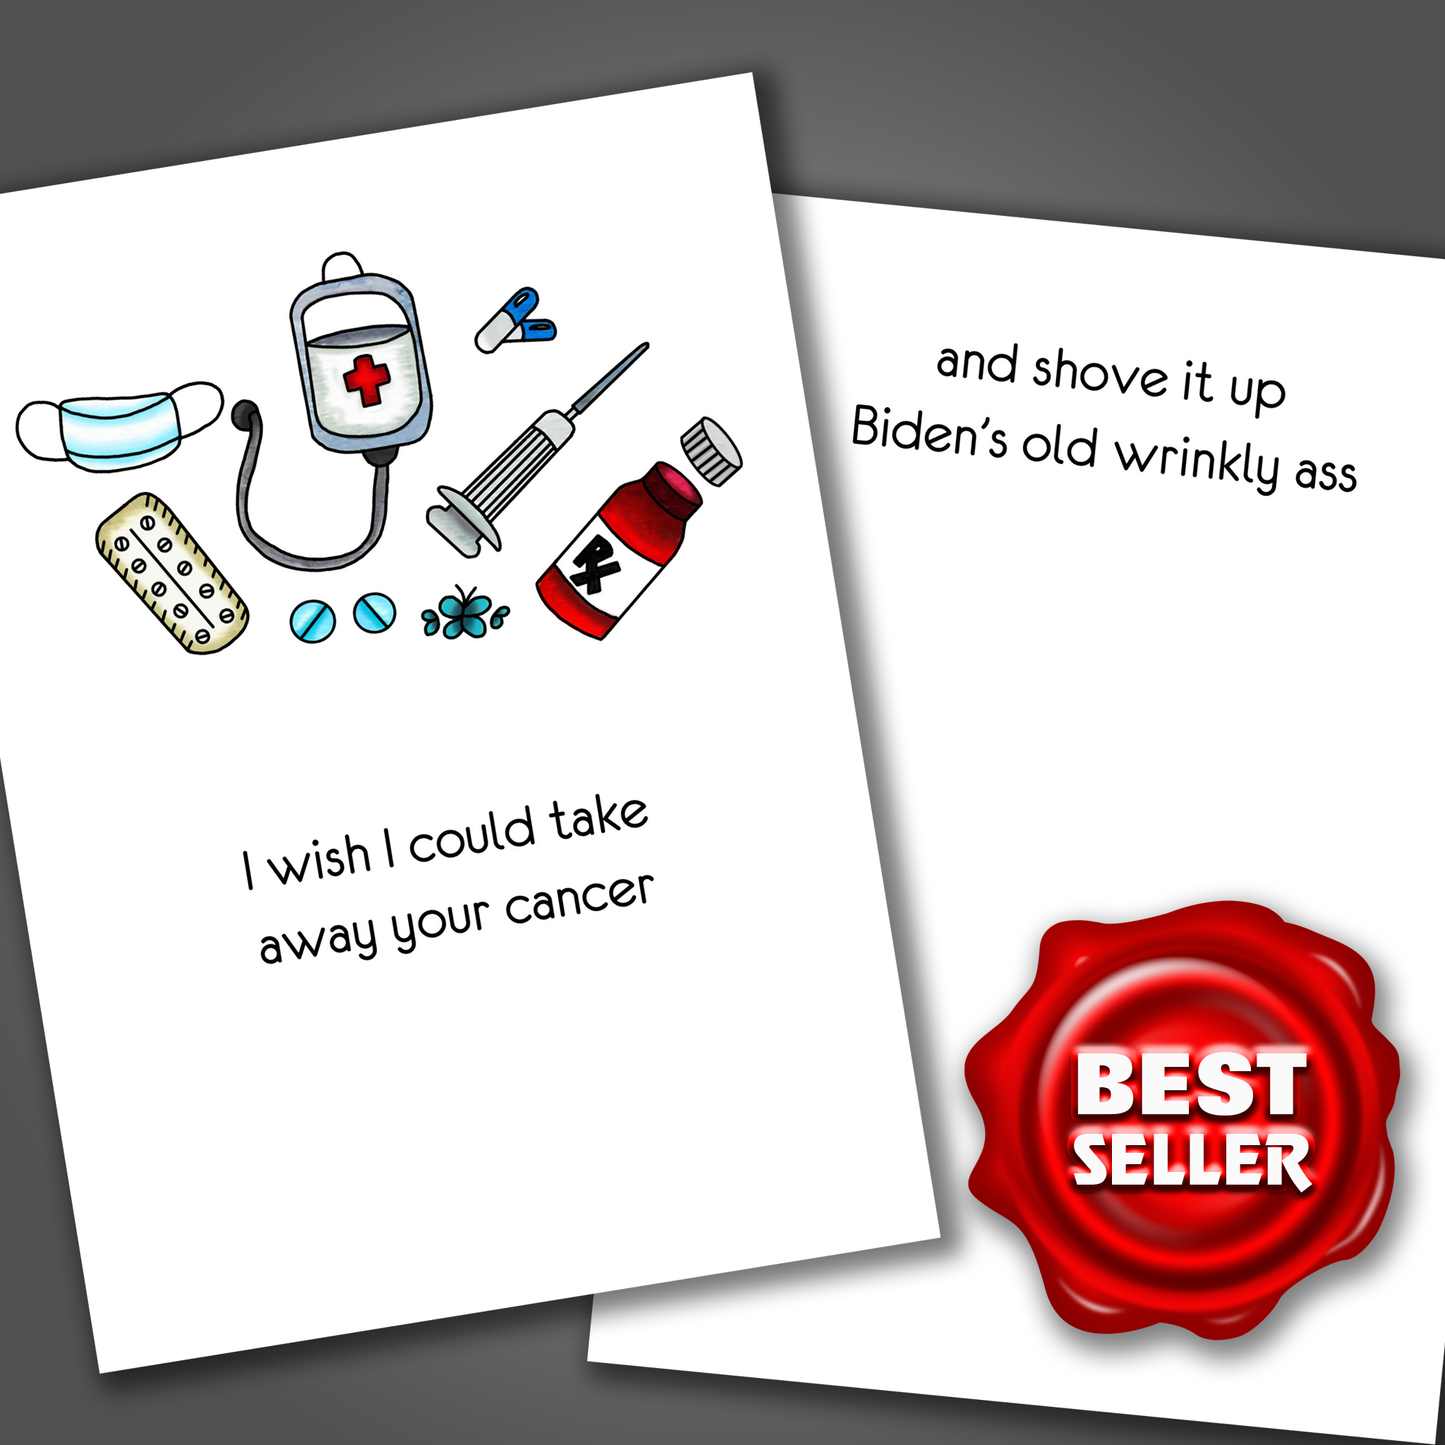 Shove Cancer Up Biden's Ass, Cancer Card